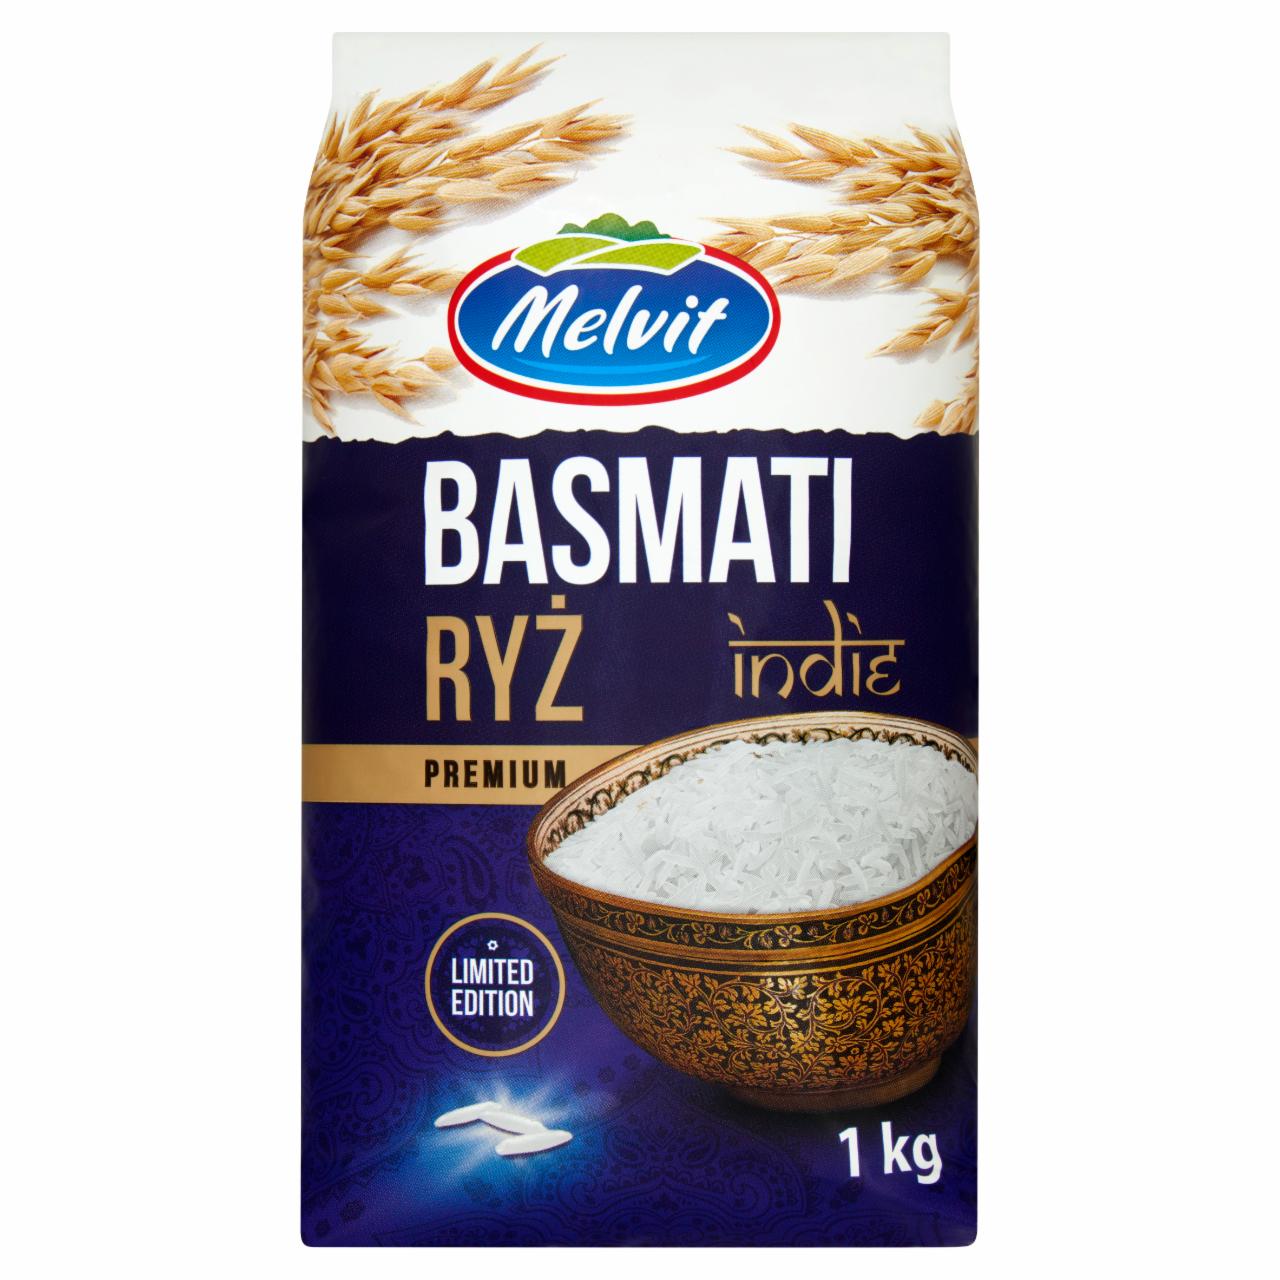 Zdjęcia - Melvit Premium Ryż Basmati Indie 1 kg